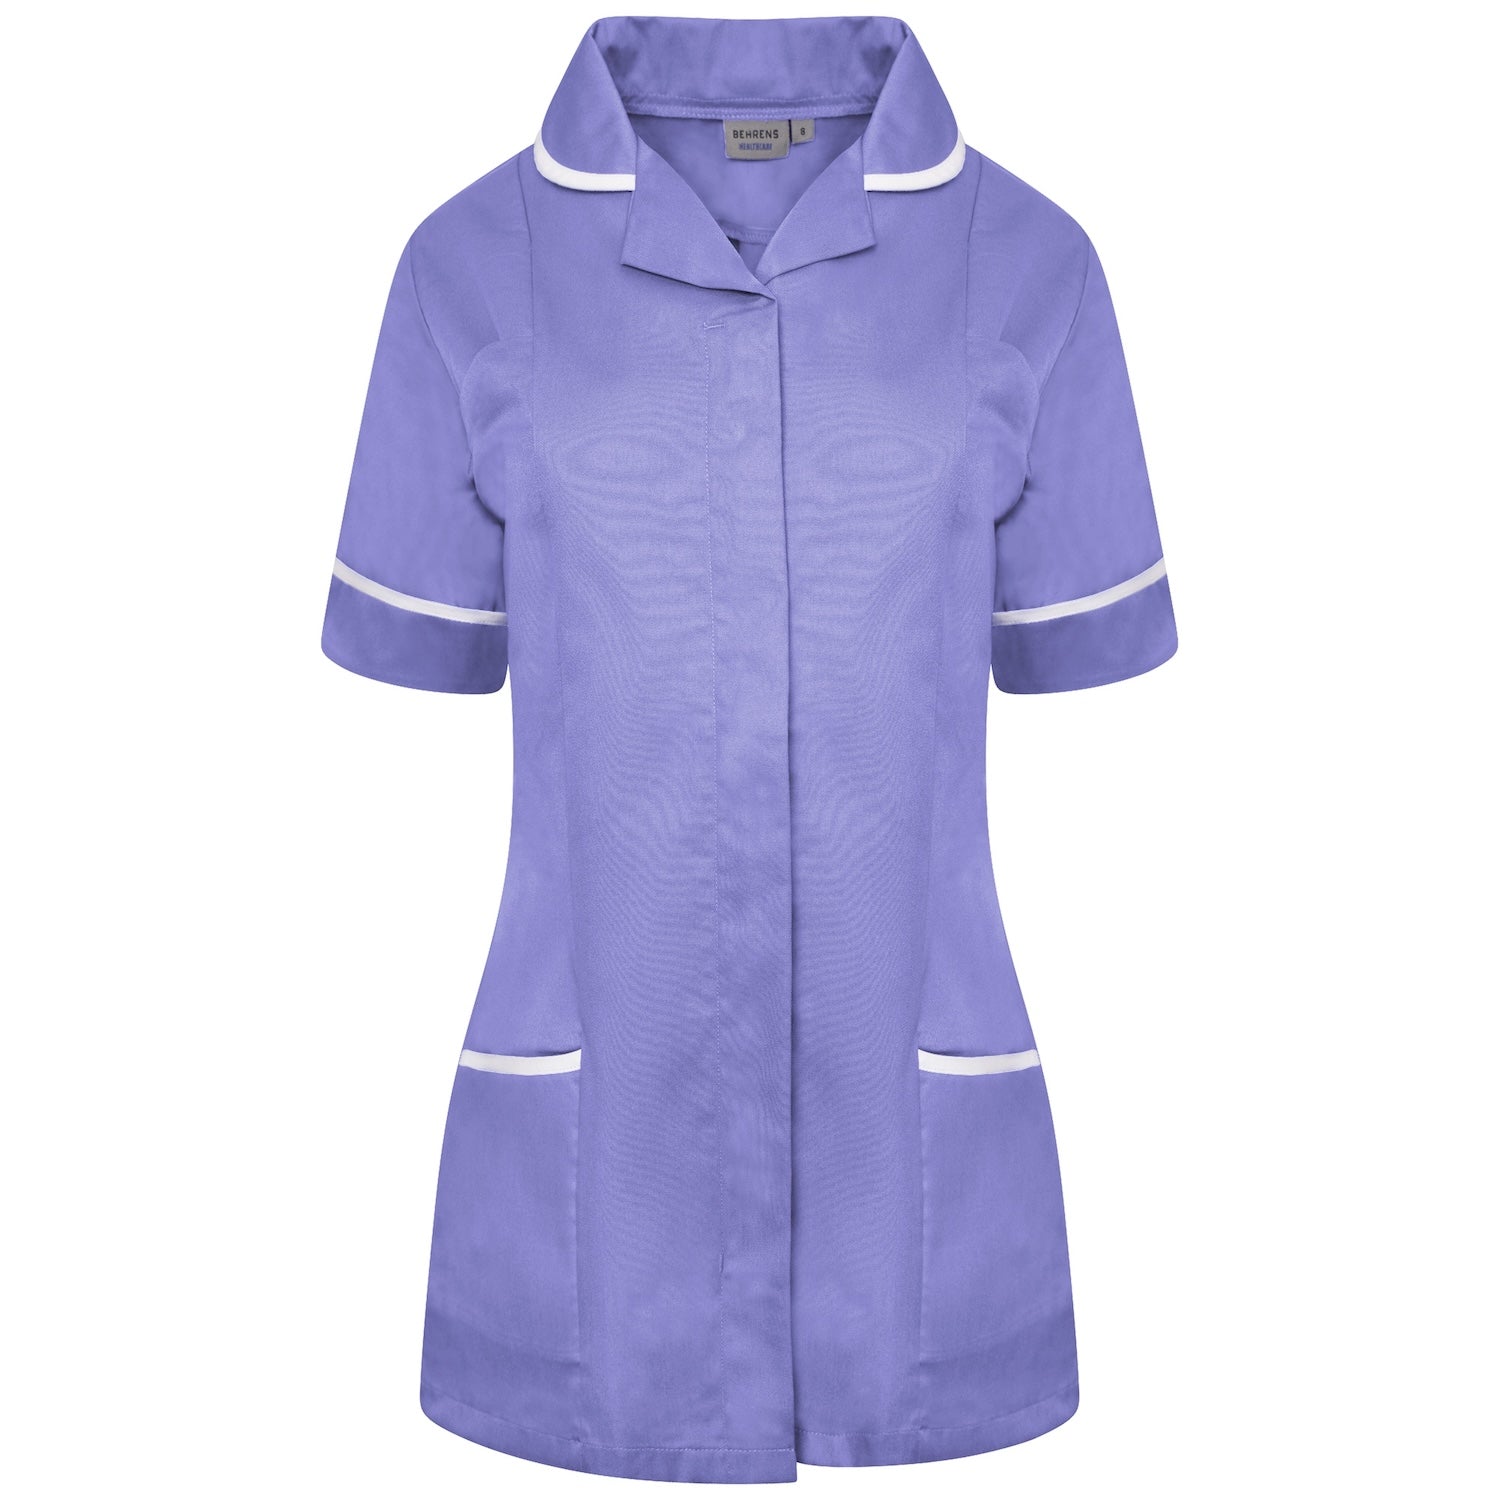 Ladies Healthcare Tunic | Round Collar | Metro Blue/White Trim